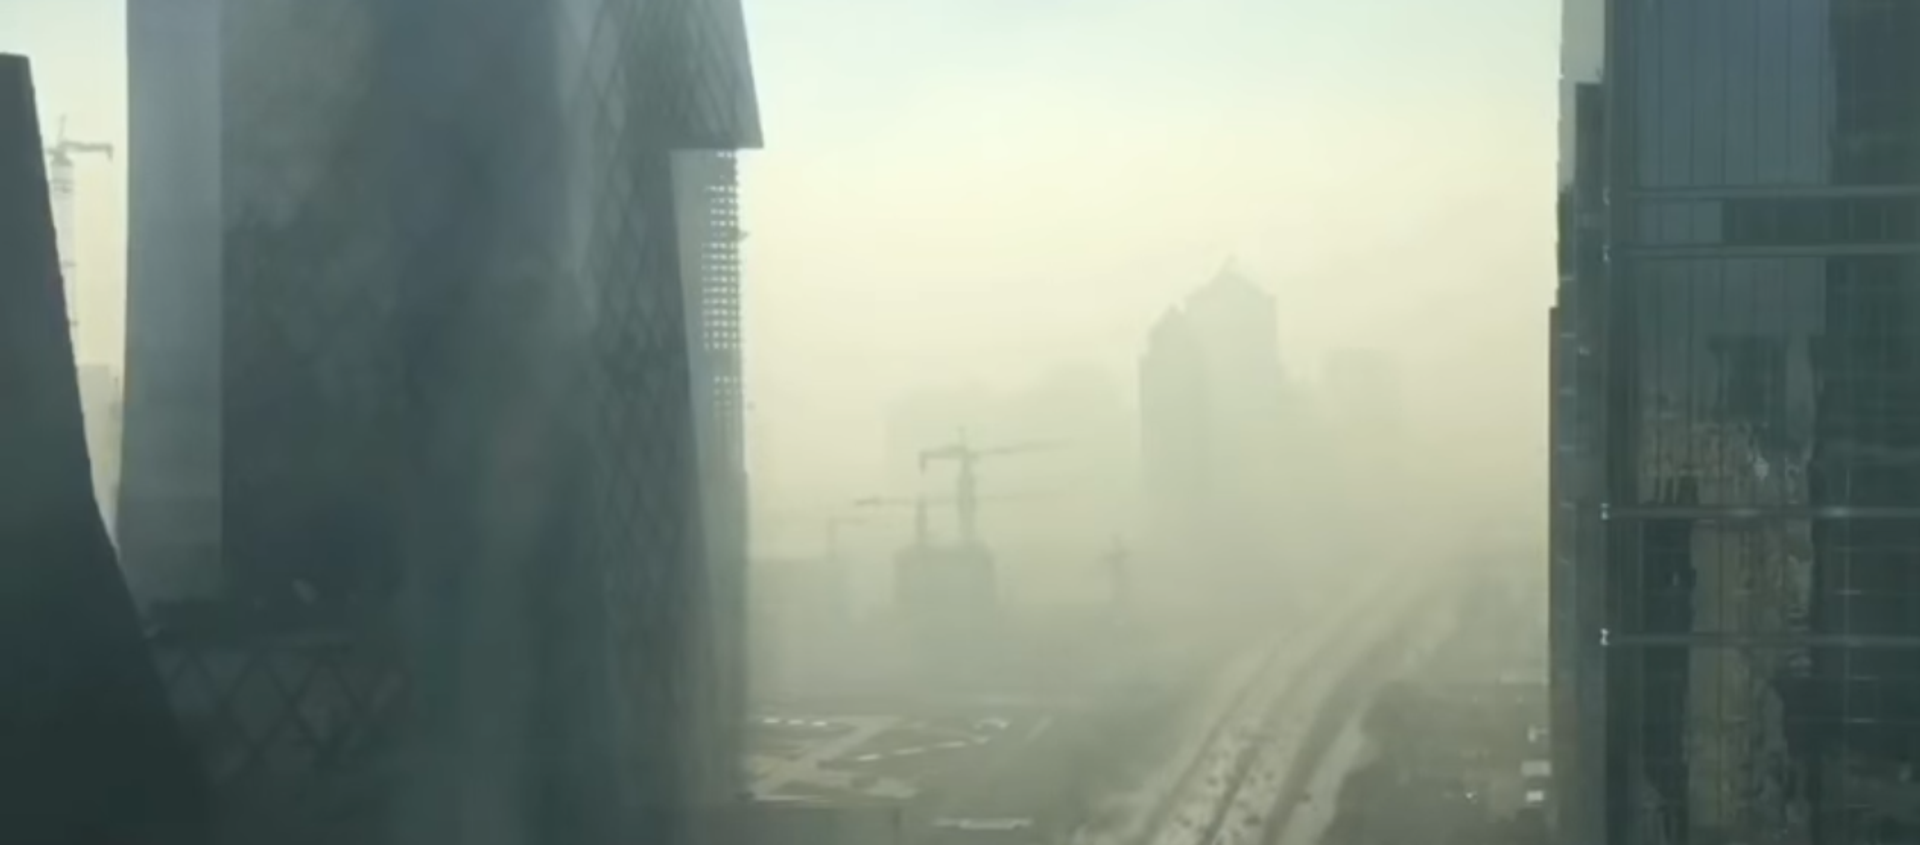 Una espesa capa de contaminación envuelve la capital china - Sputnik Mundo, 1920, 03.01.2017